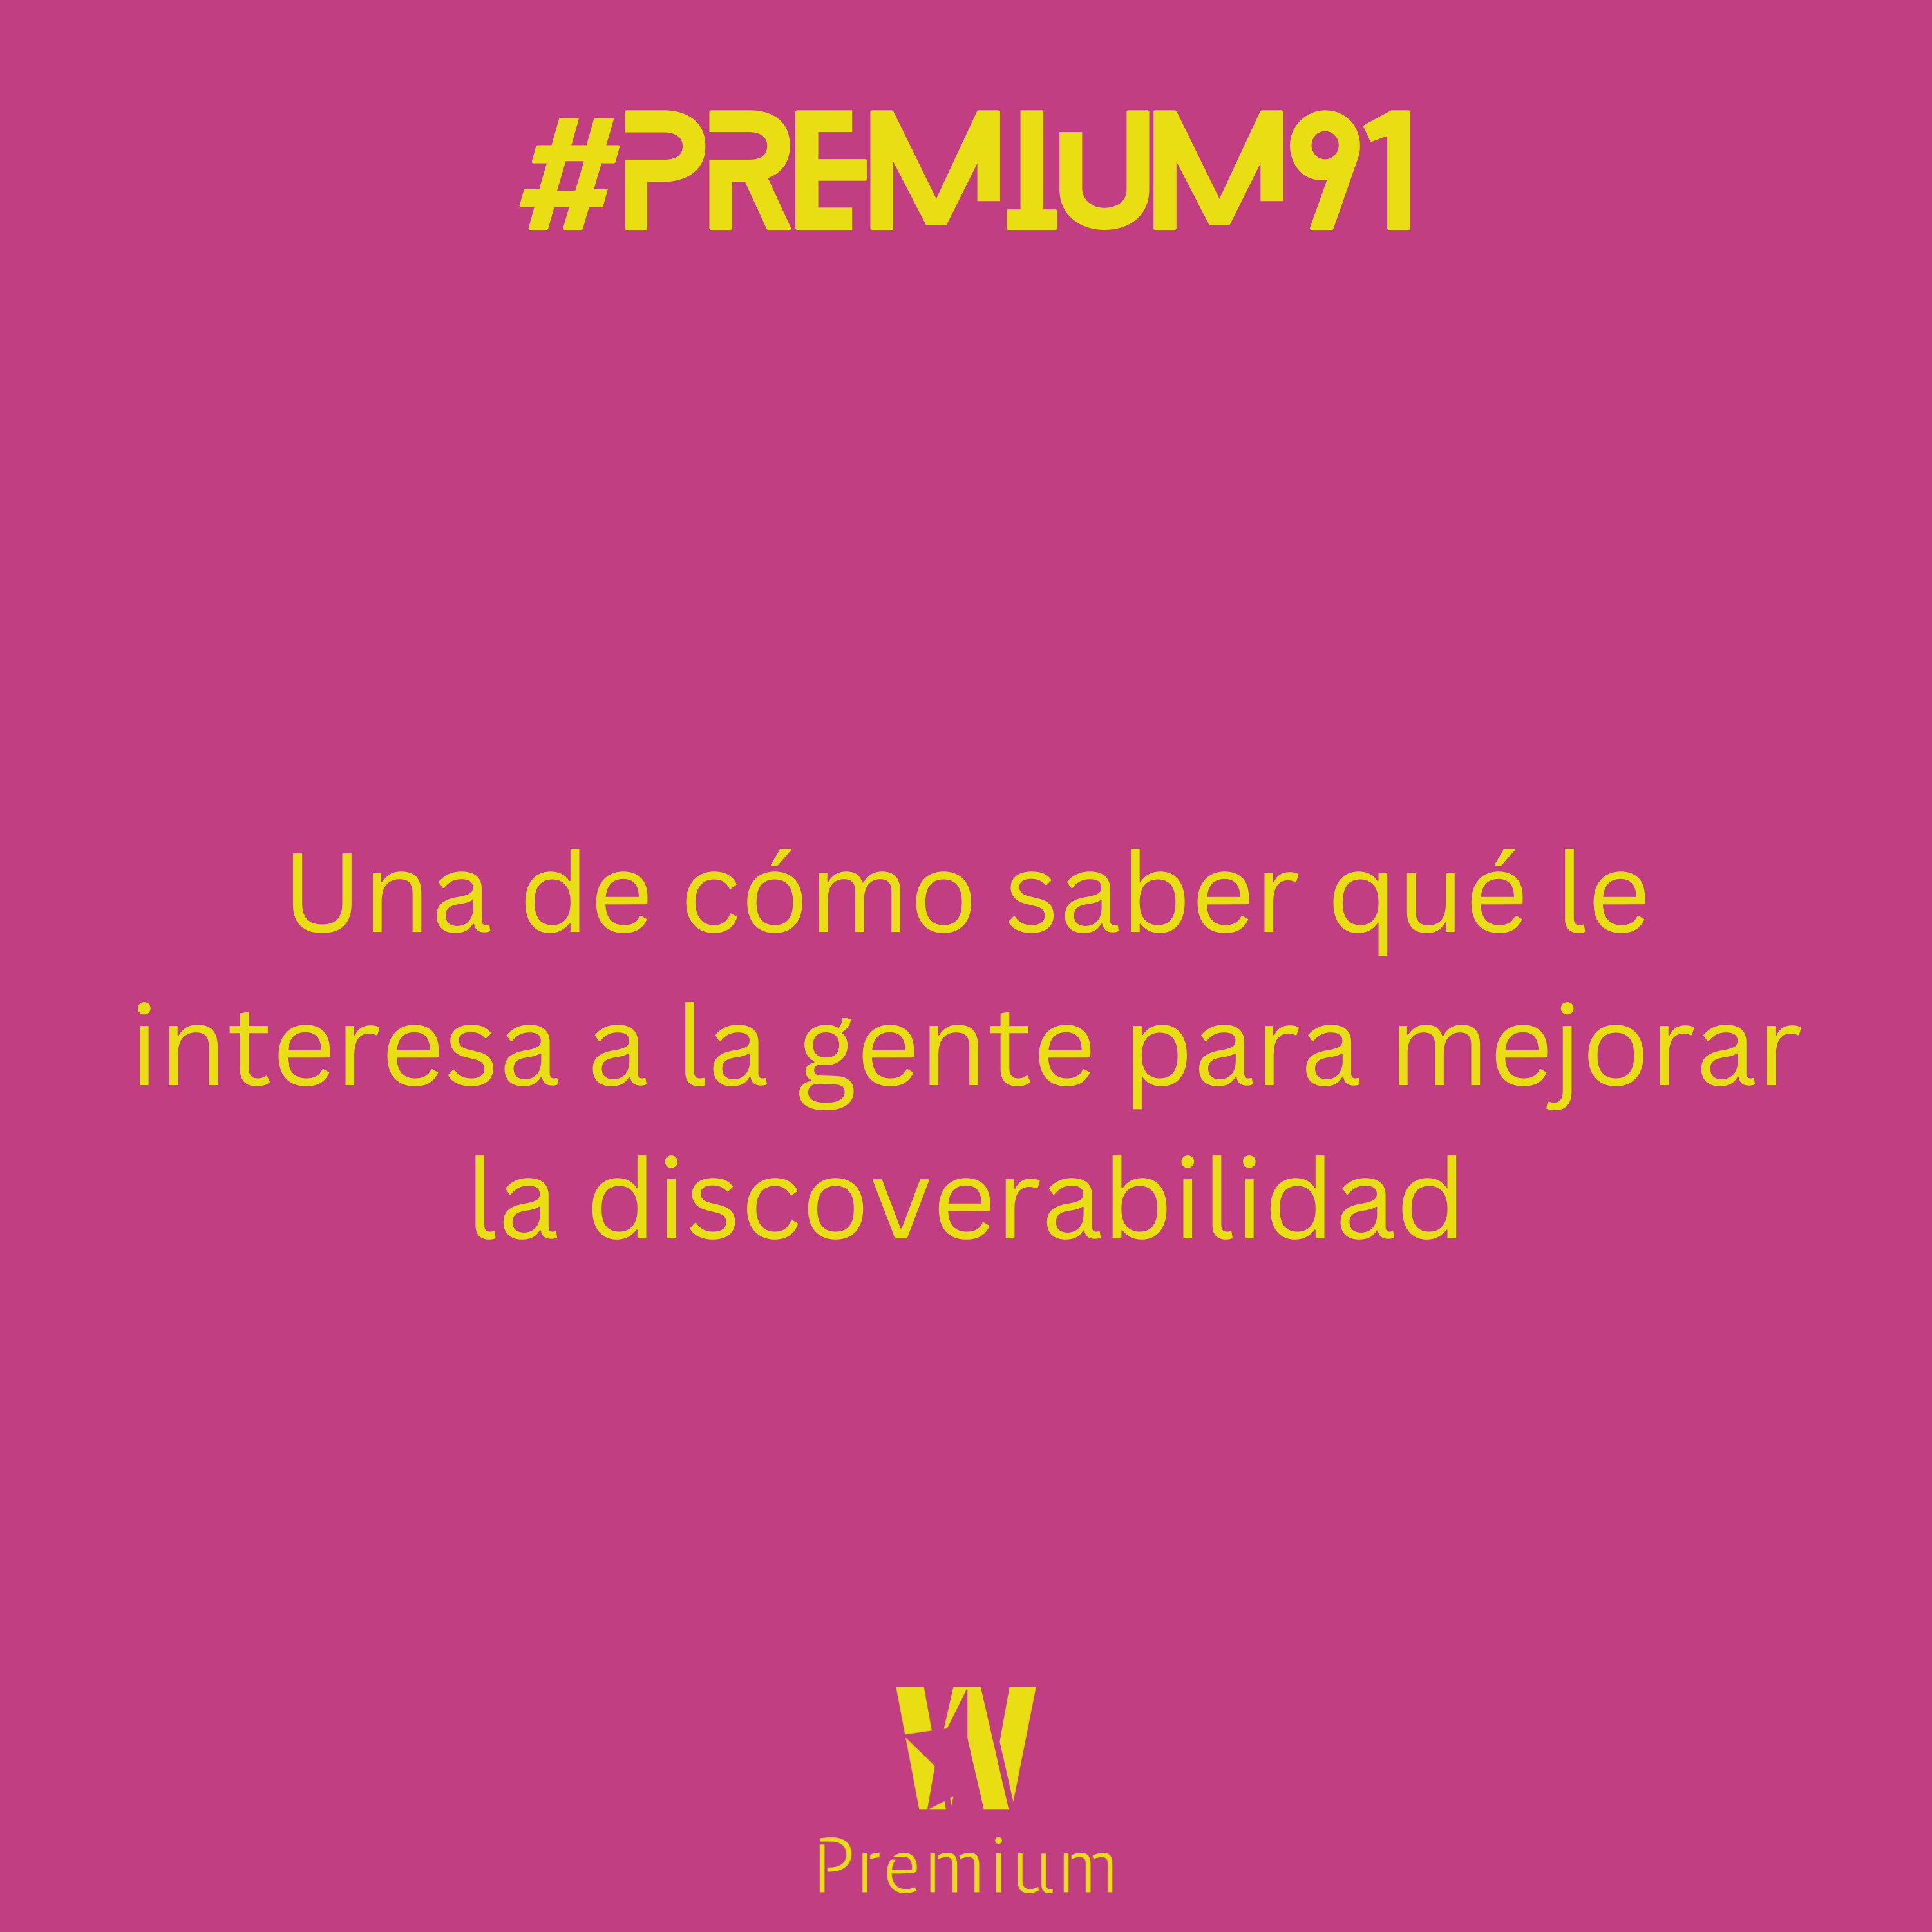 #Premium91 - Una de cómo saber qué le interesa a la gente para mejorar la discoverabilidad